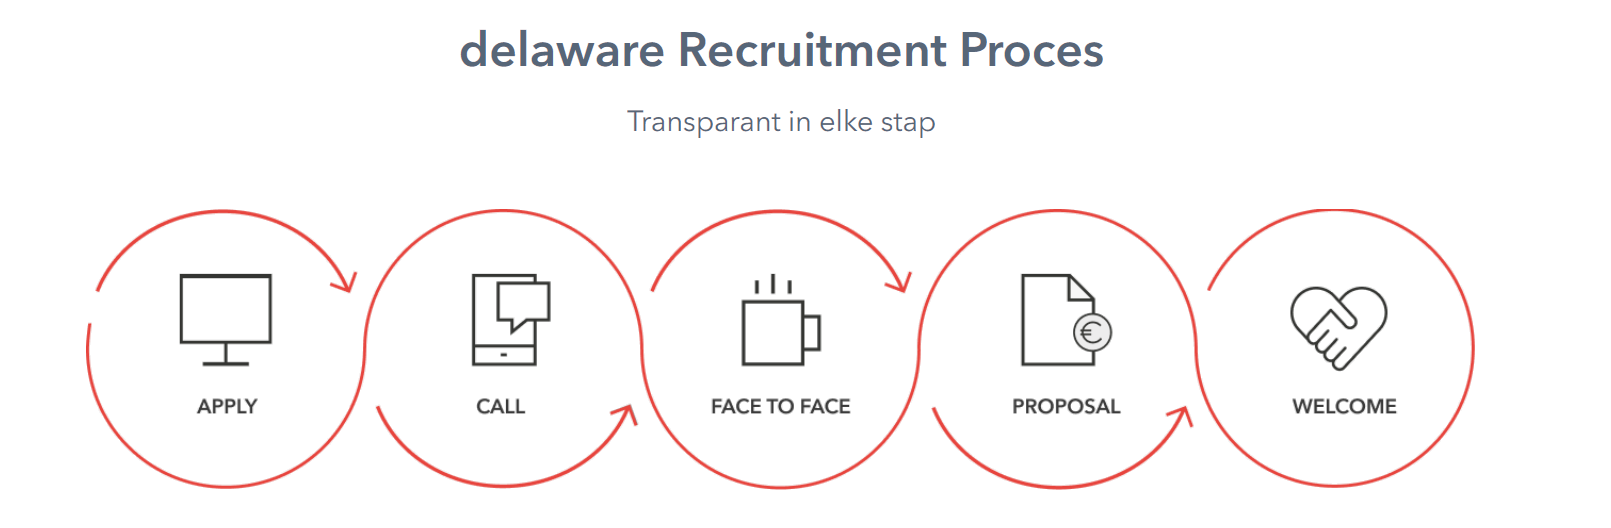 delaware Recruitment Proces